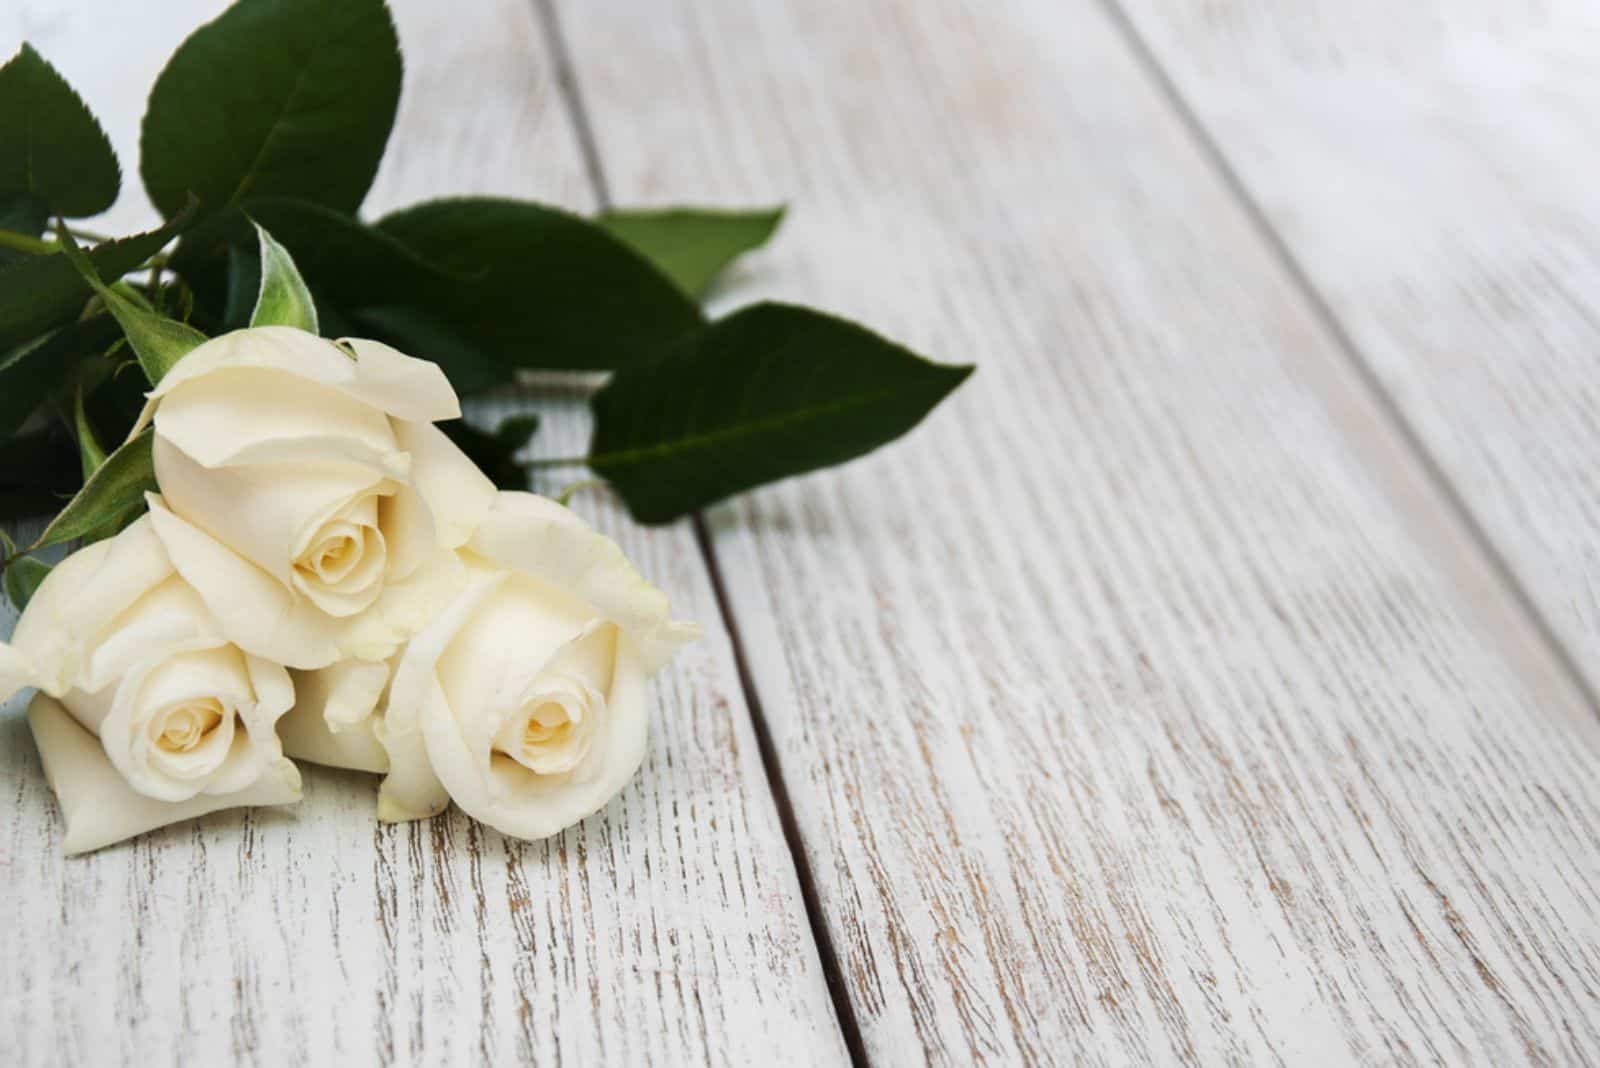 Roses blanches sur une vieille table en bois blanche